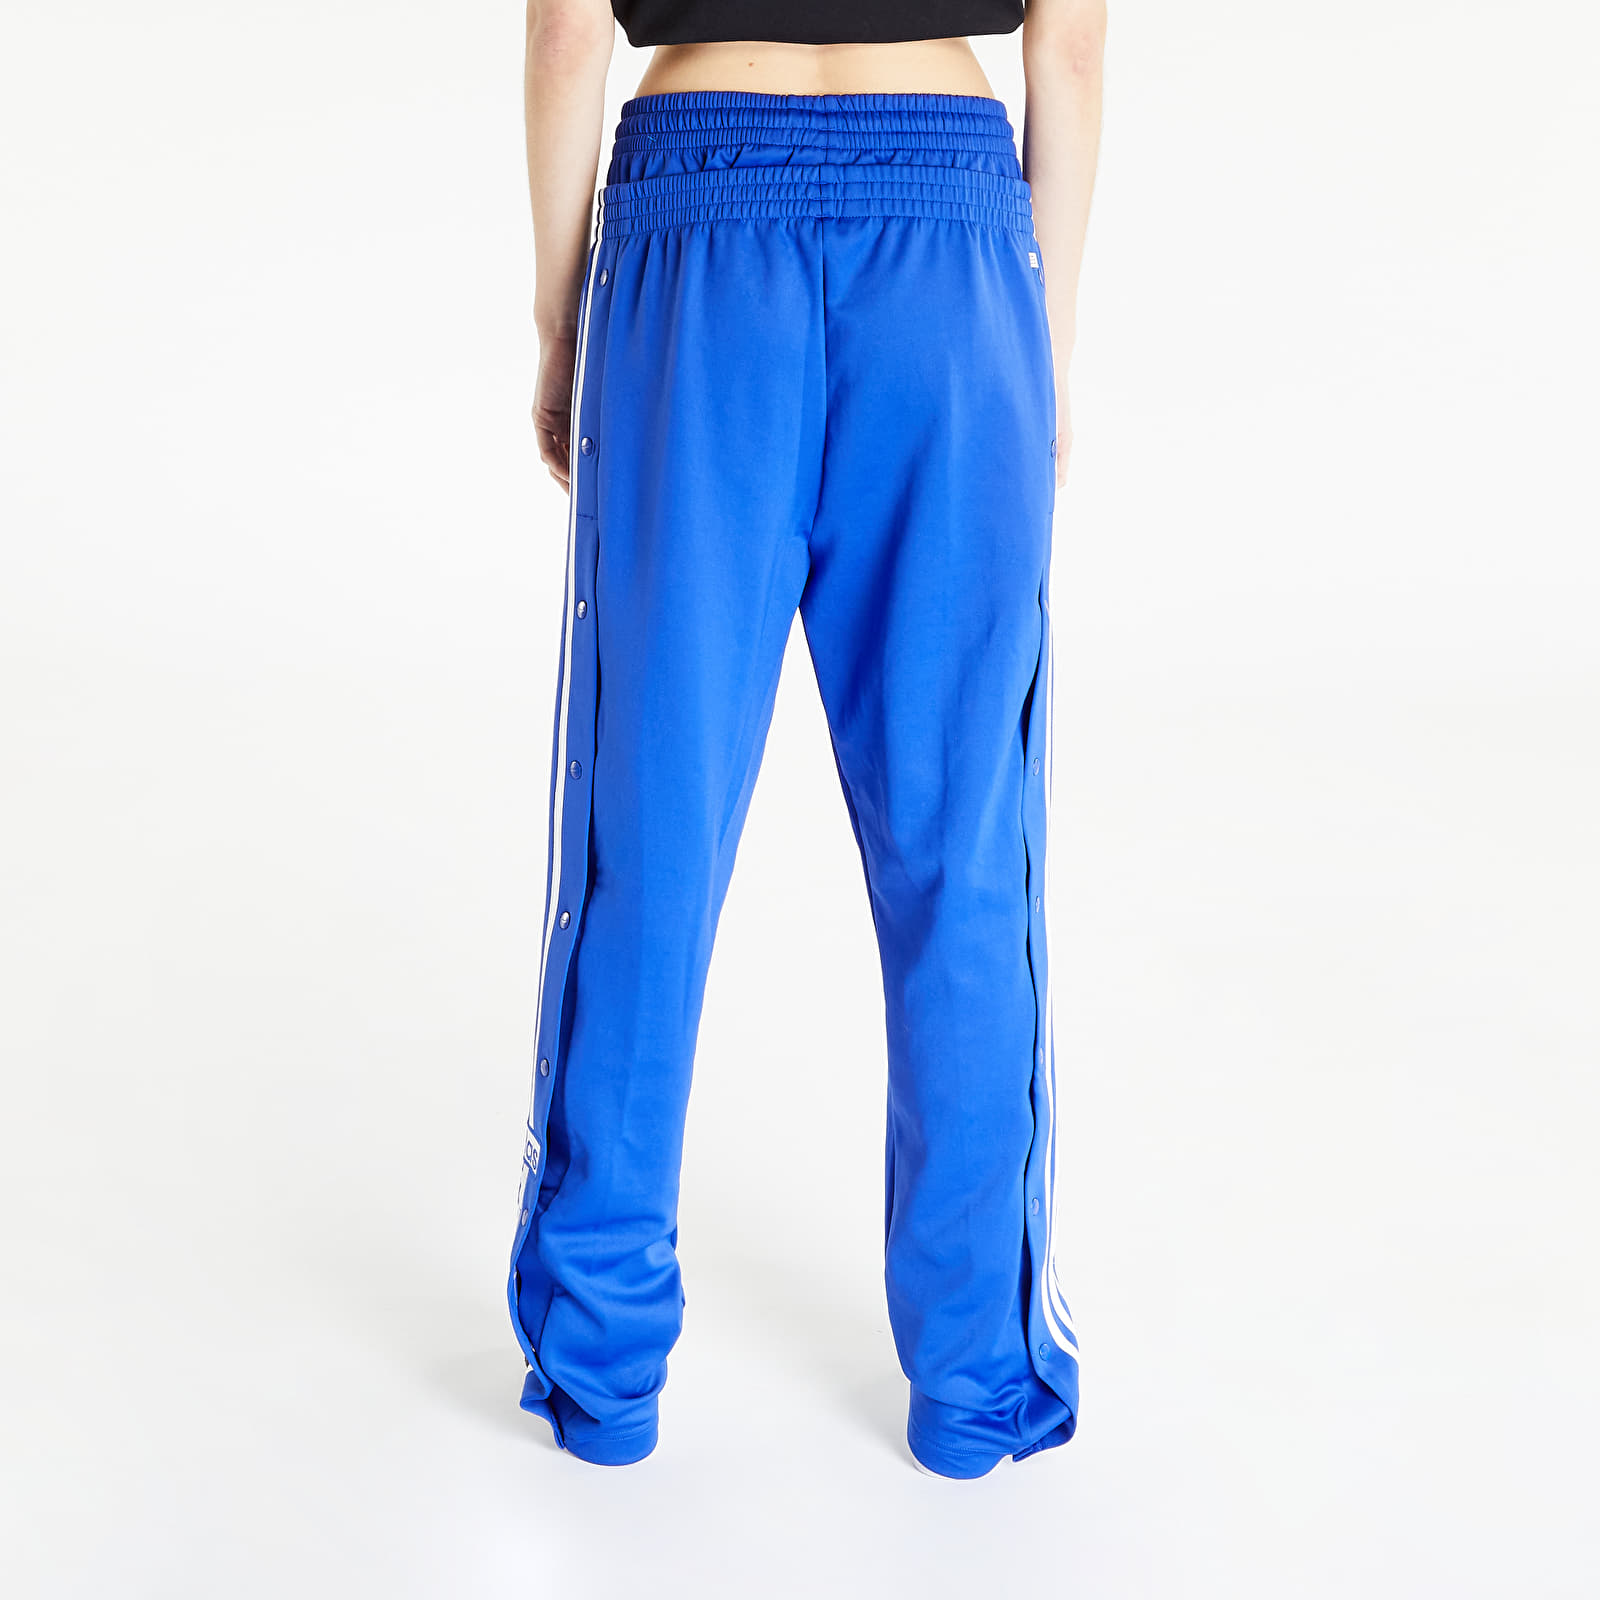 Jogginghosen adidas Originals Always Original Adibreak Pants Lucid Blue |  Queens